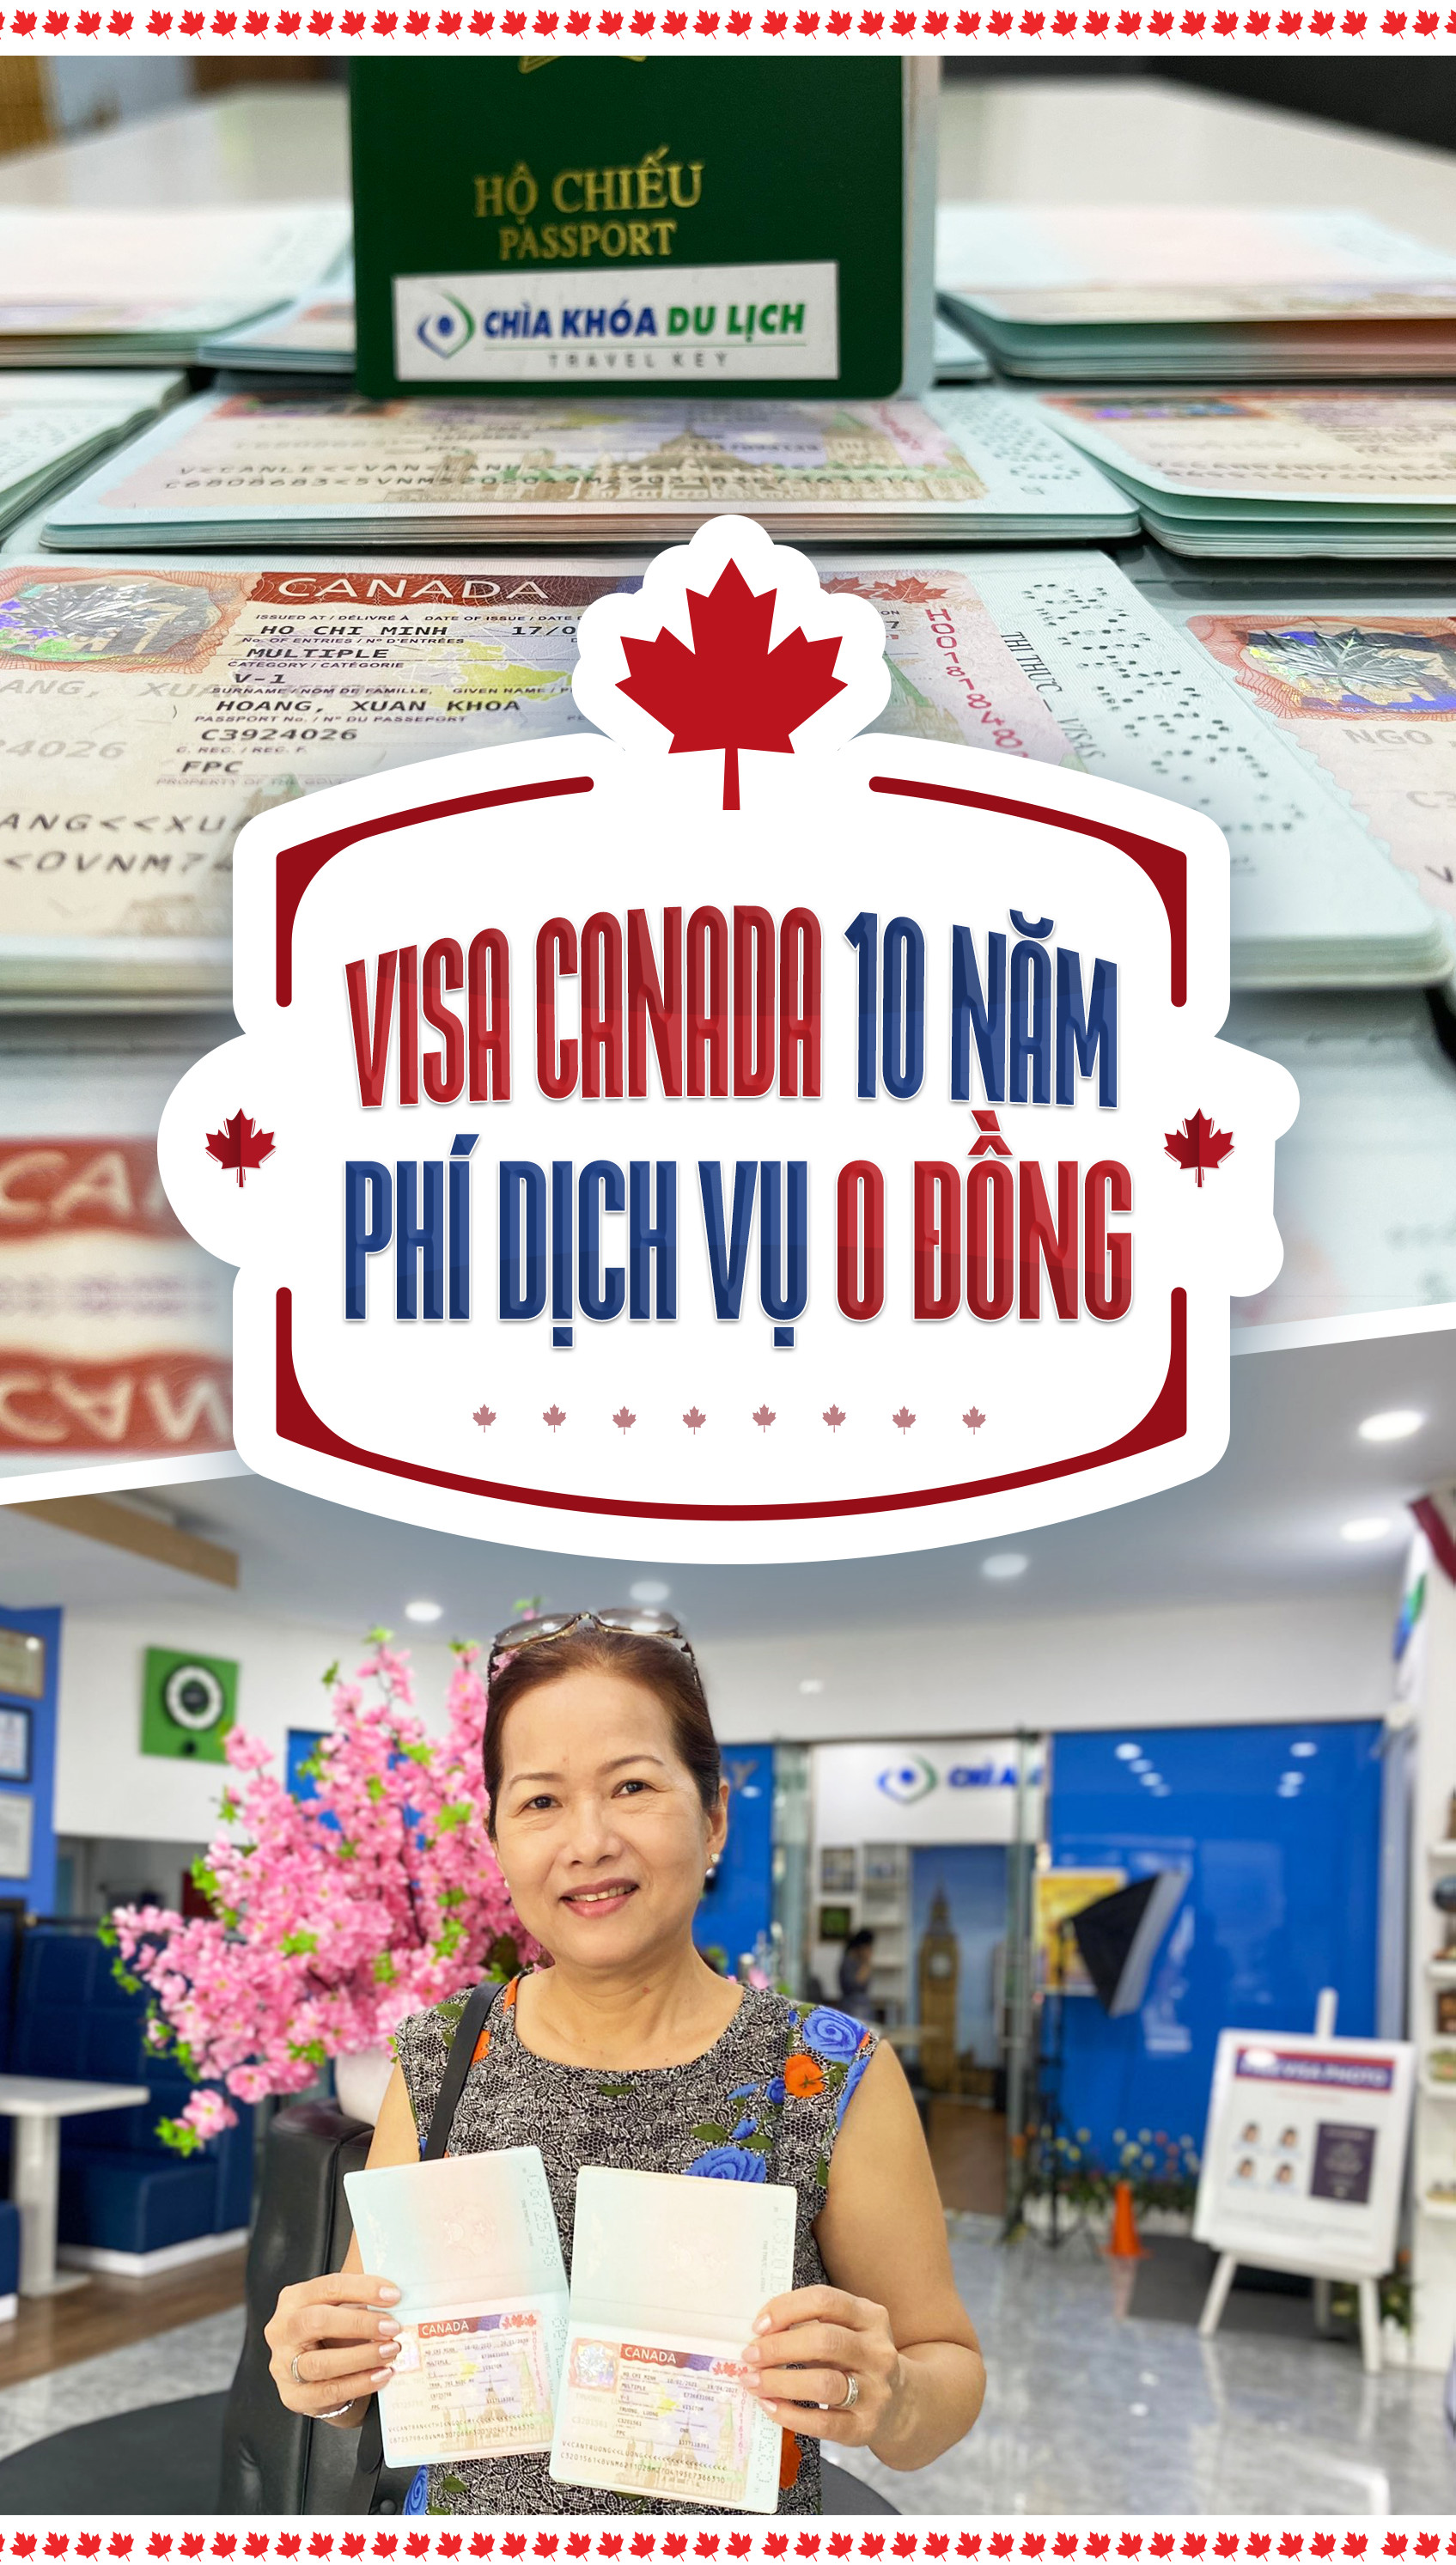 Visa Canada 10 - Phí dịch vụ 0 đồng